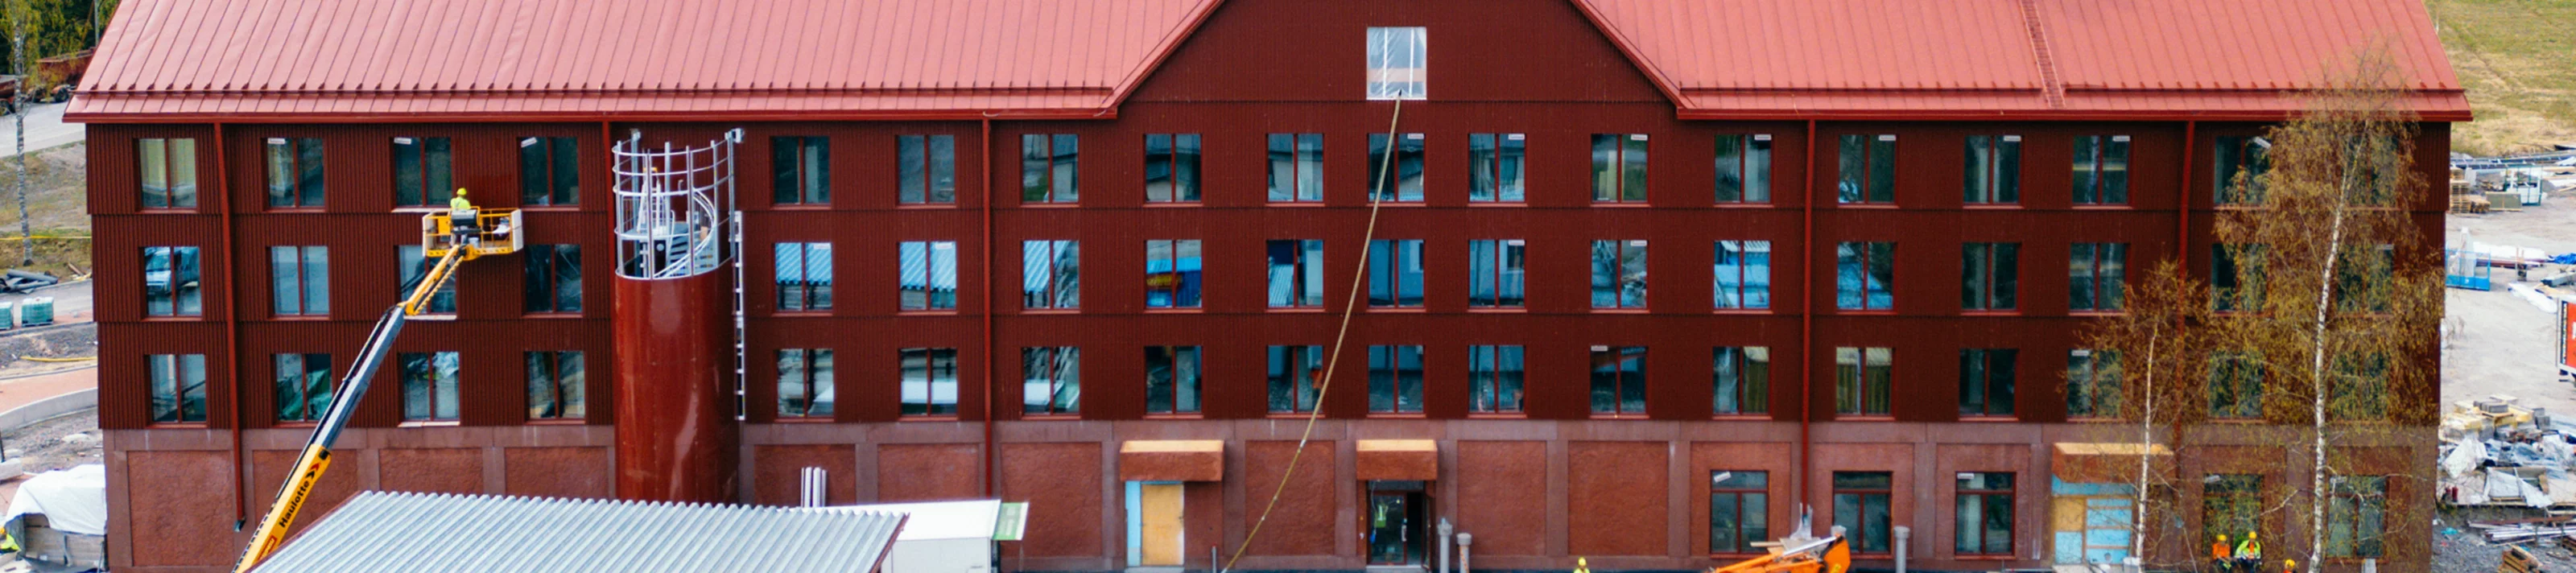 Koli Hotel Finland